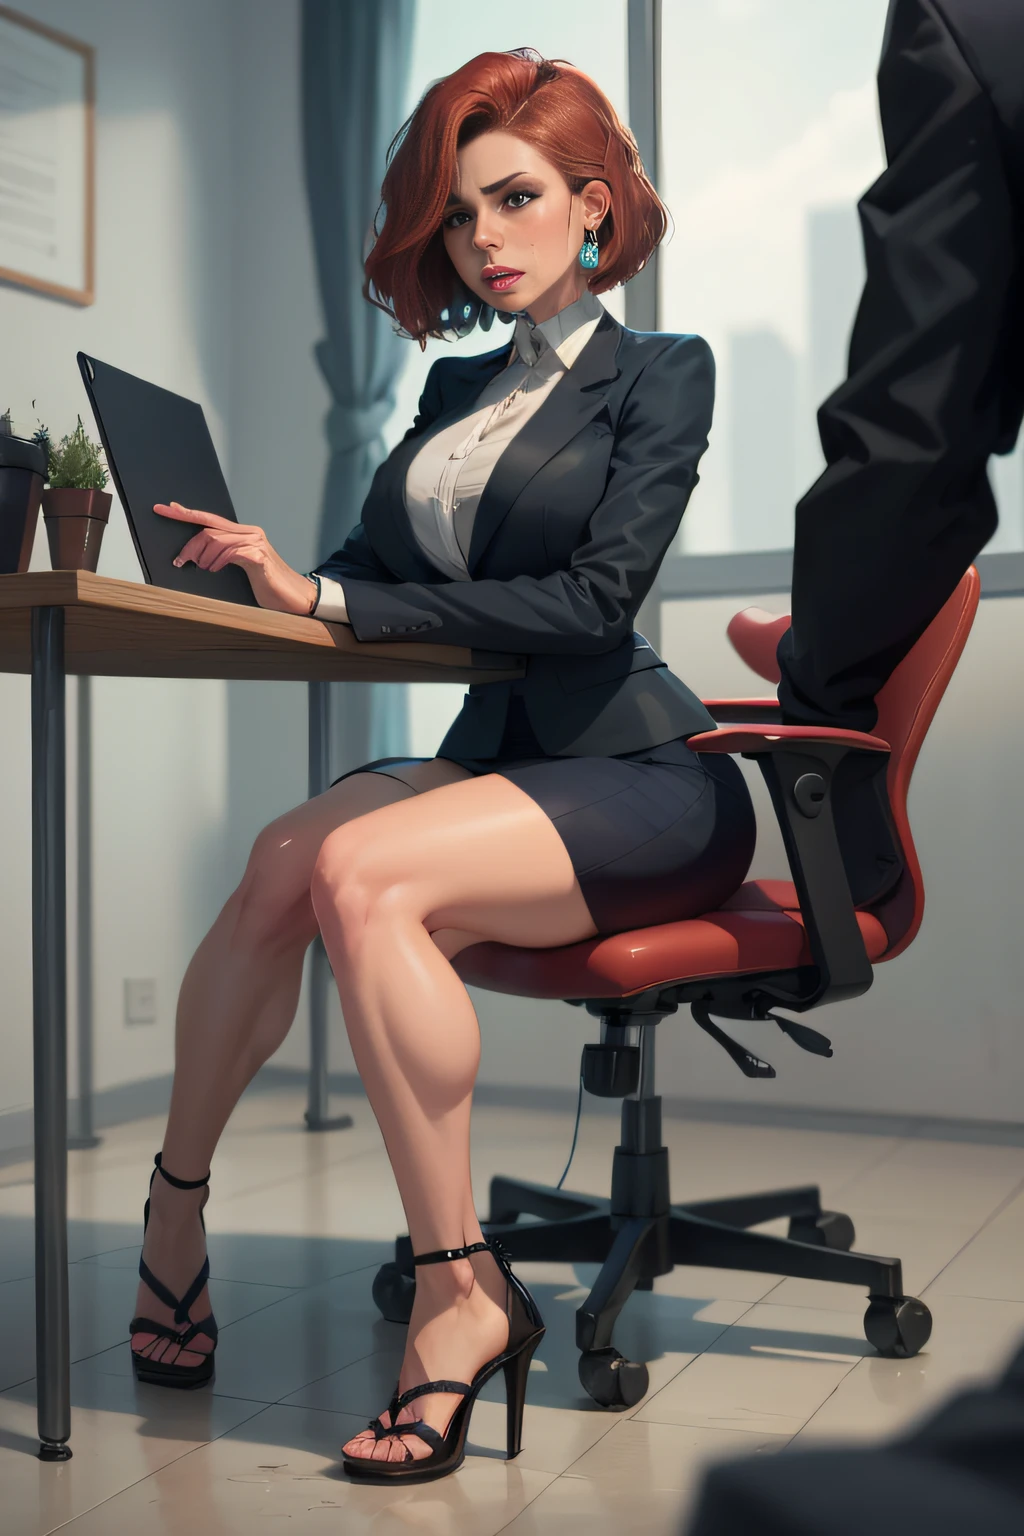 赤毛, ボブヘアカット, セクシーな秘書, 筋肉質の脚, 筋肉質のふくらはぎ, 強い脚, 筋肉質なヒップ, 太ももが広い, 曲線的なヒップ, 全身ショット, ハイヒールサンダル, ネットのタイツ, スティレットヒール, ショートスカートの女性用ビジネススーツ, 大きなリングイヤリング, He really おしっこしたい, 会社で, テーブルに座っている, 電話で話す, おしっこしたい, desperately おしっこしたい, 排尿したい, 彼の顔には恥ずかしさの表情が浮かんでいた, 混乱, 絶望の表情, 泣いている, 股間を手でつまむ, スカートの裾を手でくしゃくしゃにする, 膝をくっつけて, 緊張した姿勢, 下唇を噛む, 膀胱がいっぱい, ひどくトイレに行きたい, 解剖学的に正しい, 現実的, 側面図